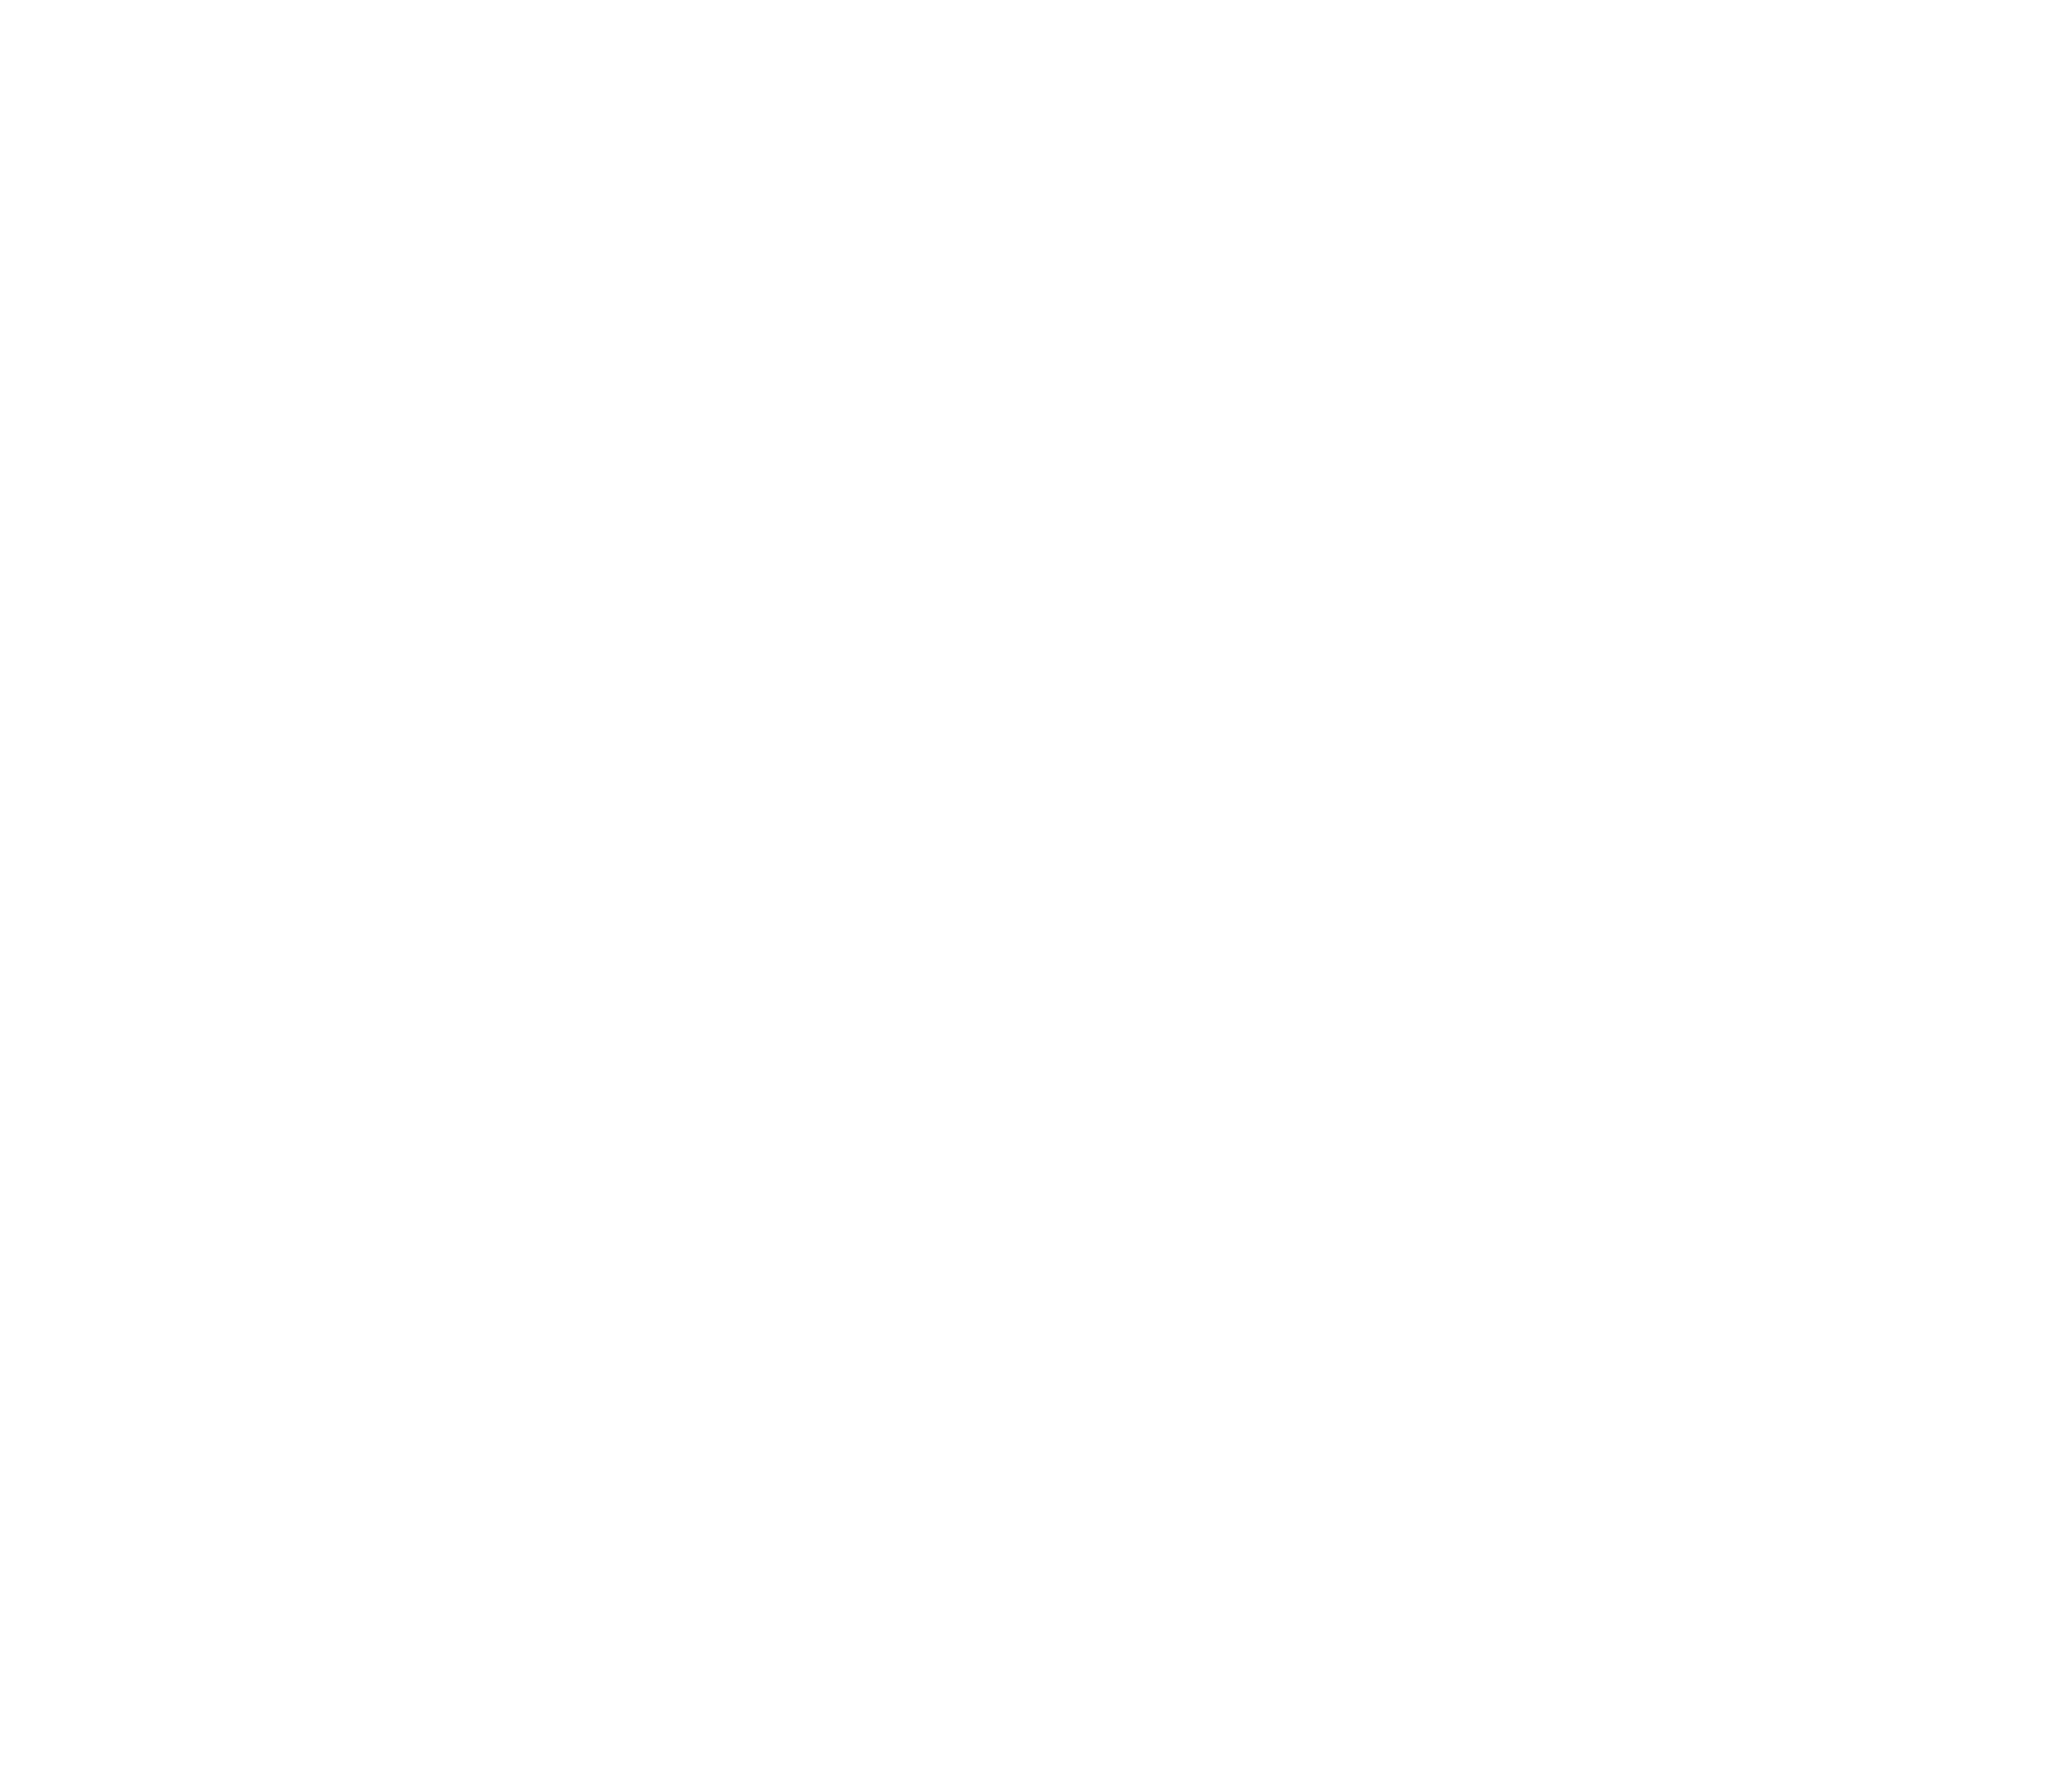 Illustration vectorielle, points reliés par des lignes en forme de cerveau